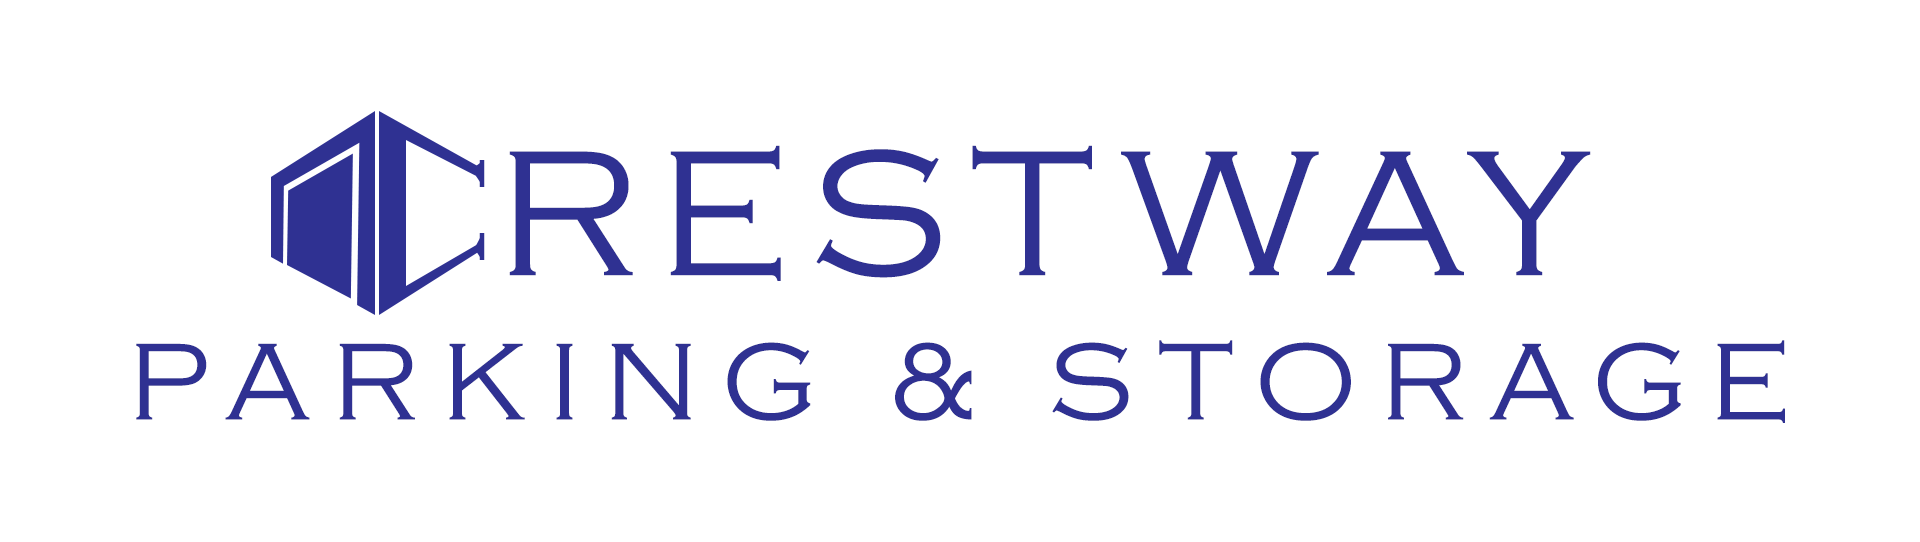 Crestway Parking & Storage Logo